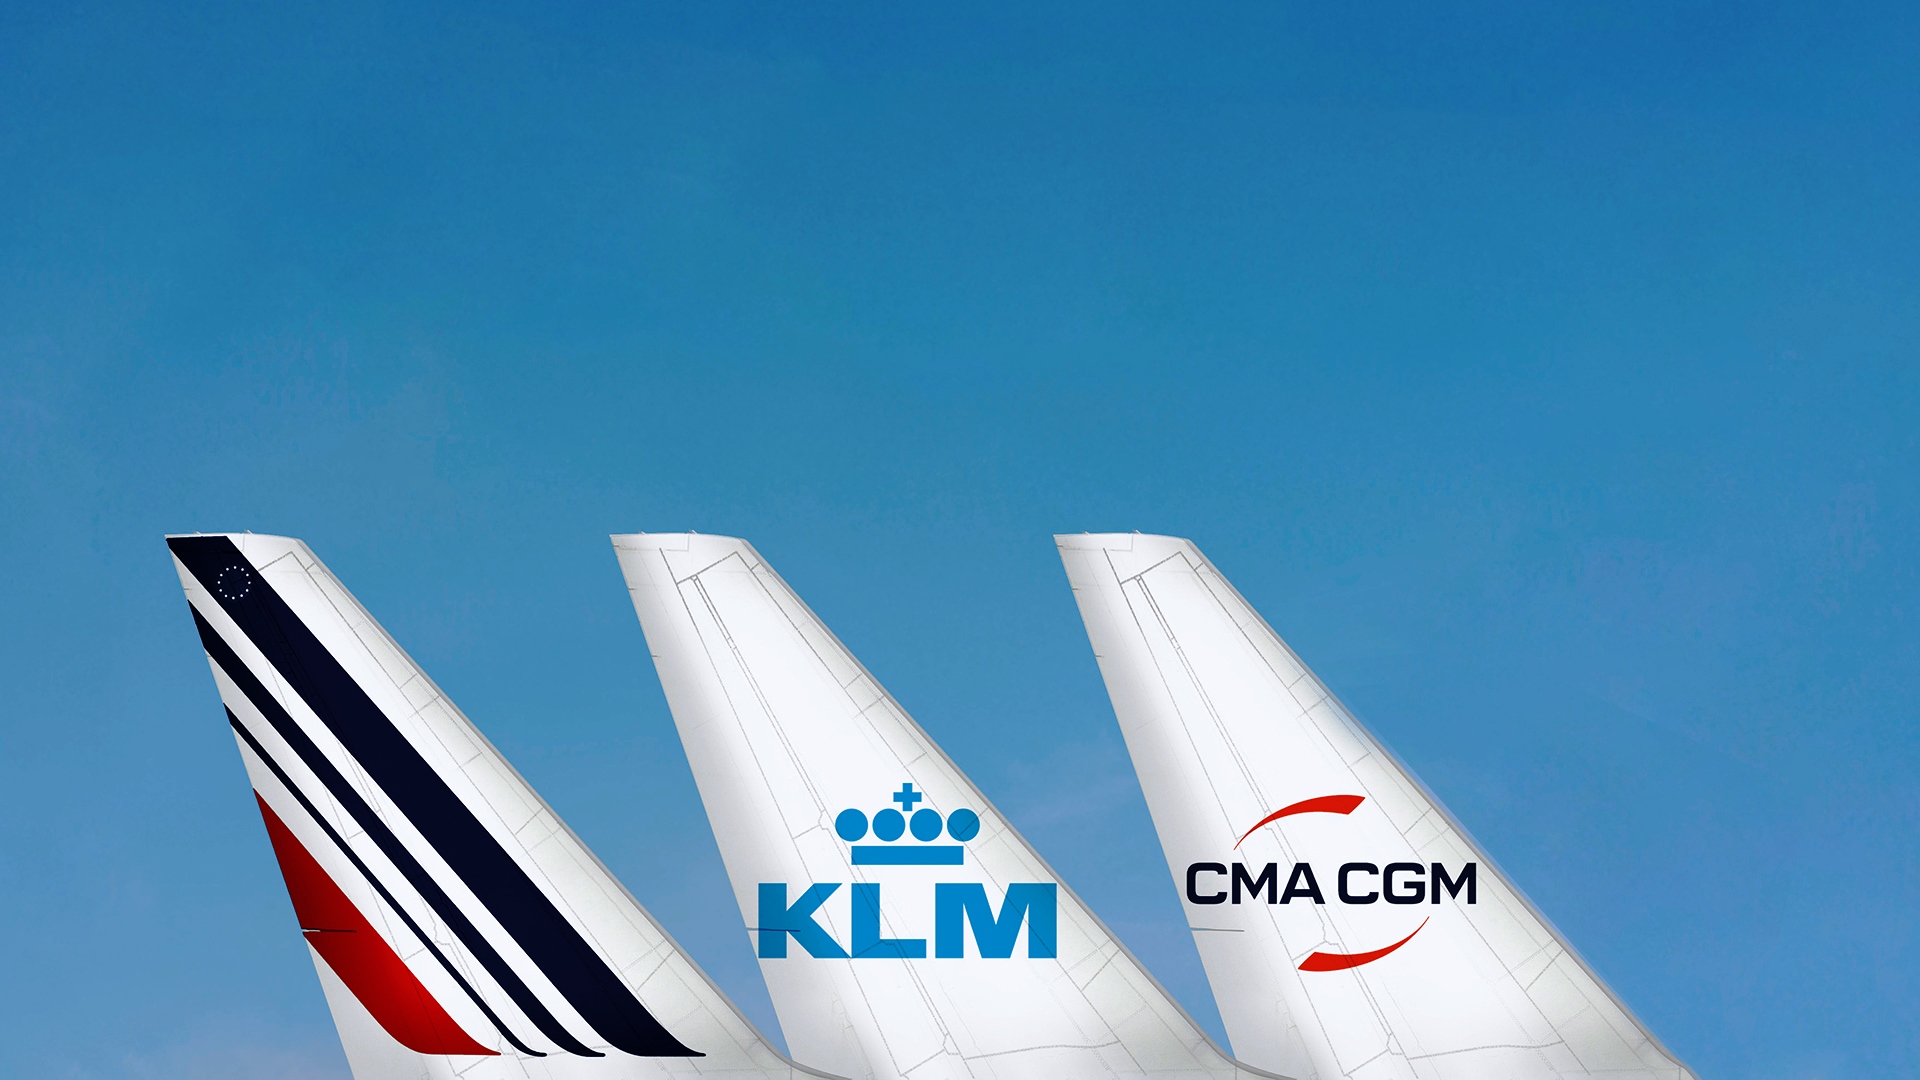 Air France - KLM - CMA CGM